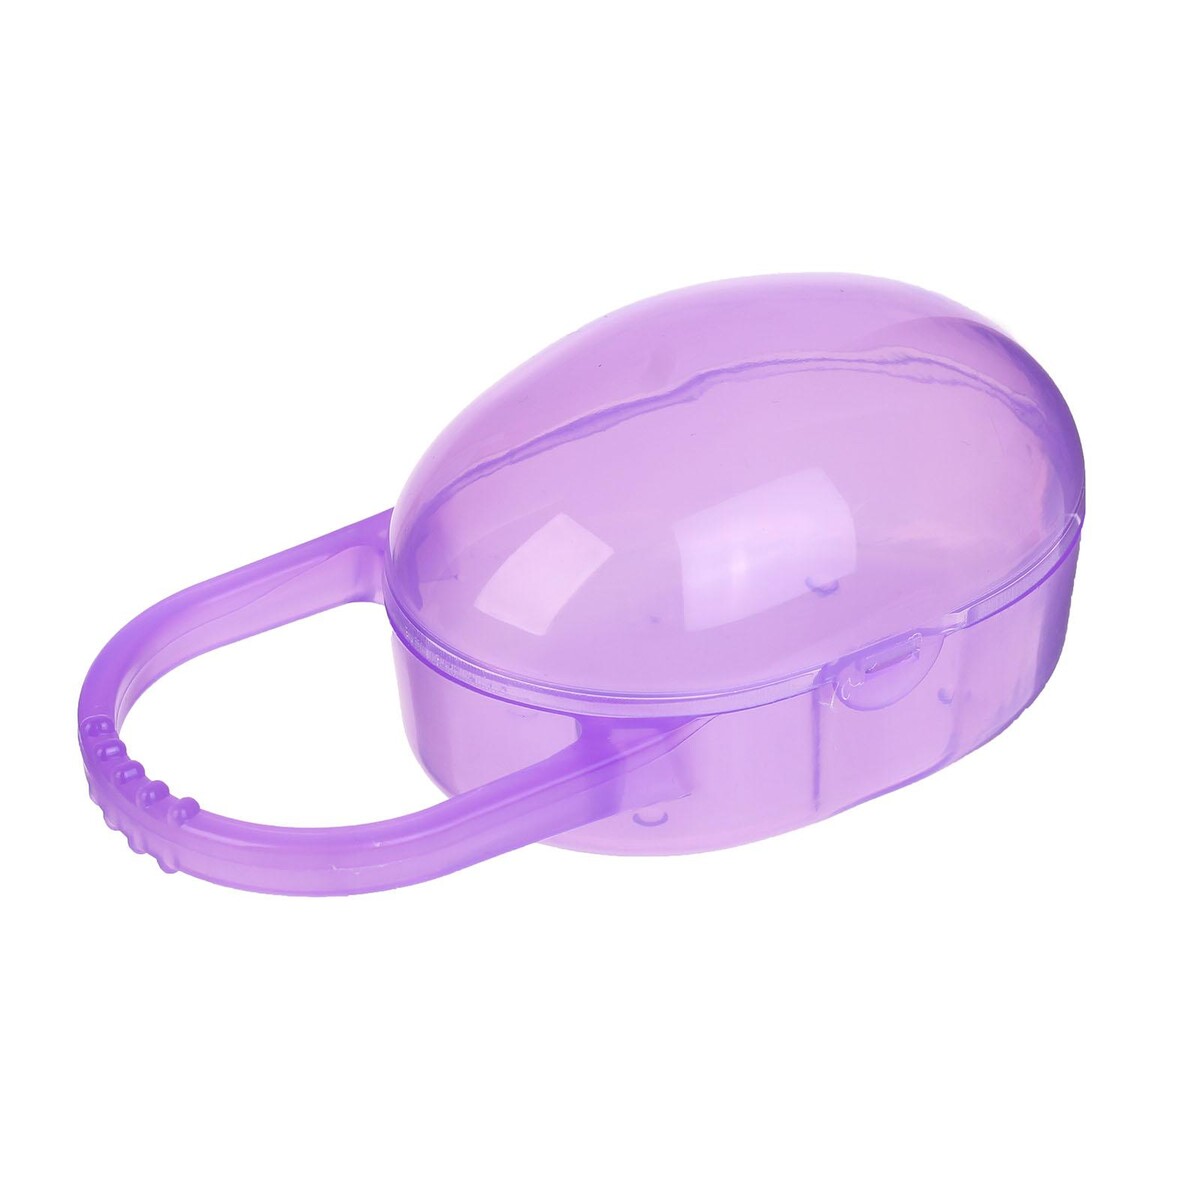 Контейнер для хранения и стерилизации детских сосок и пустышек, цвет фиолетовый контейнер для хранения и стерилизации детских сосок и пустышек фиолетовый